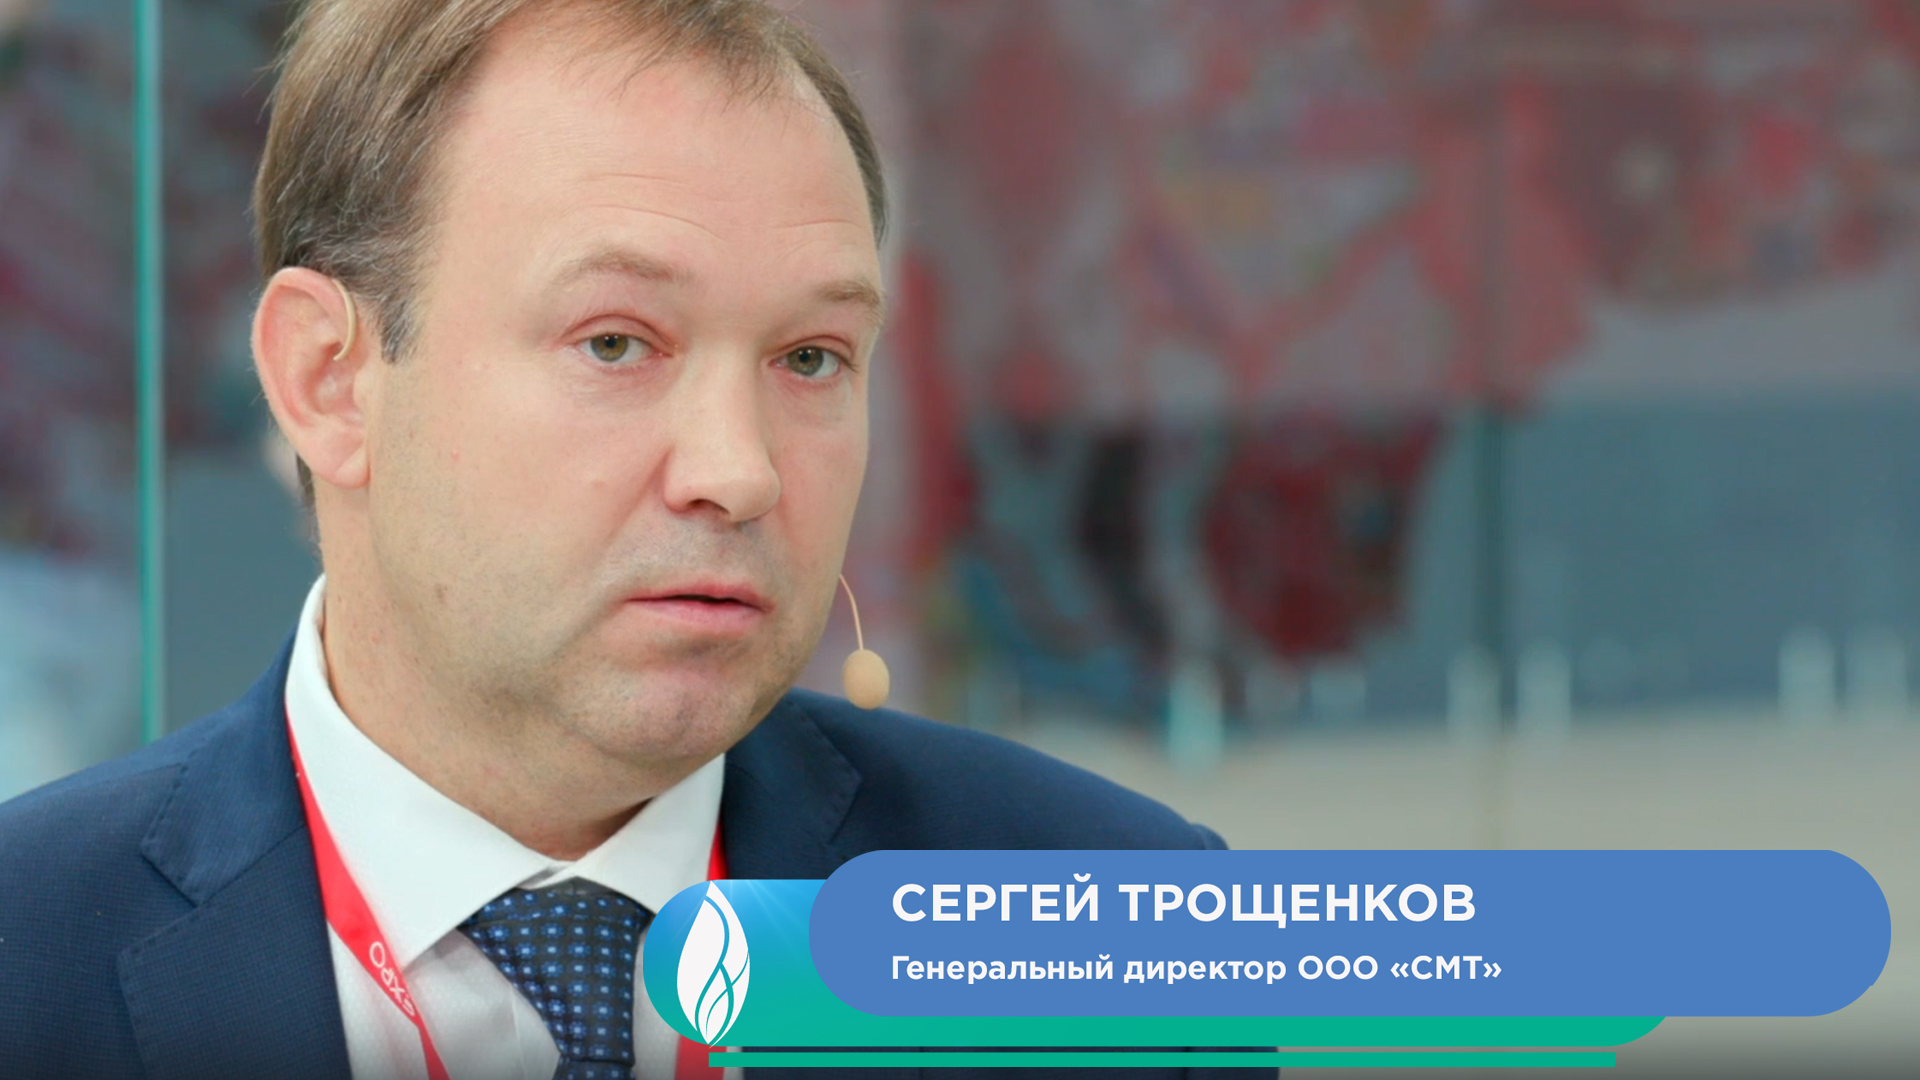 Сергей Трощенков, генеральный директор ООО «СМТ»